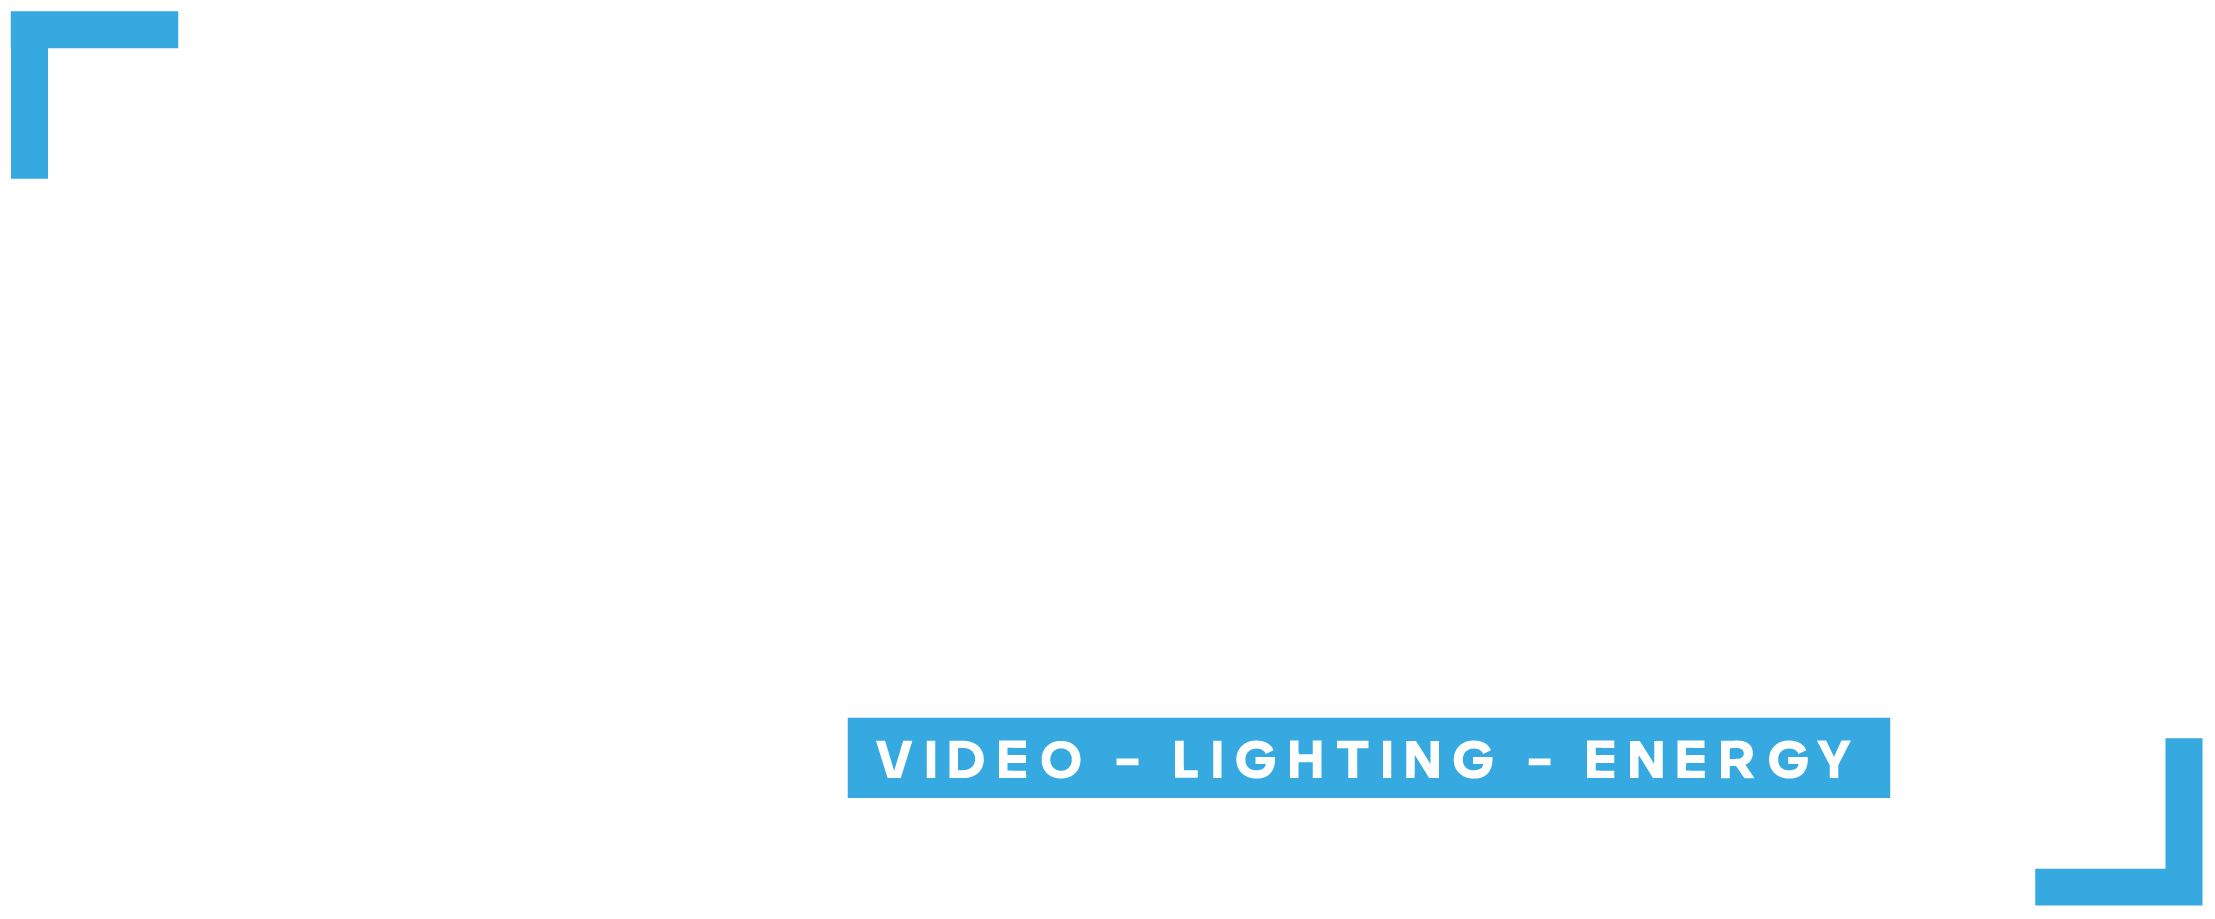 Zebra - Distributeur et importateur de matériels audiovisuels